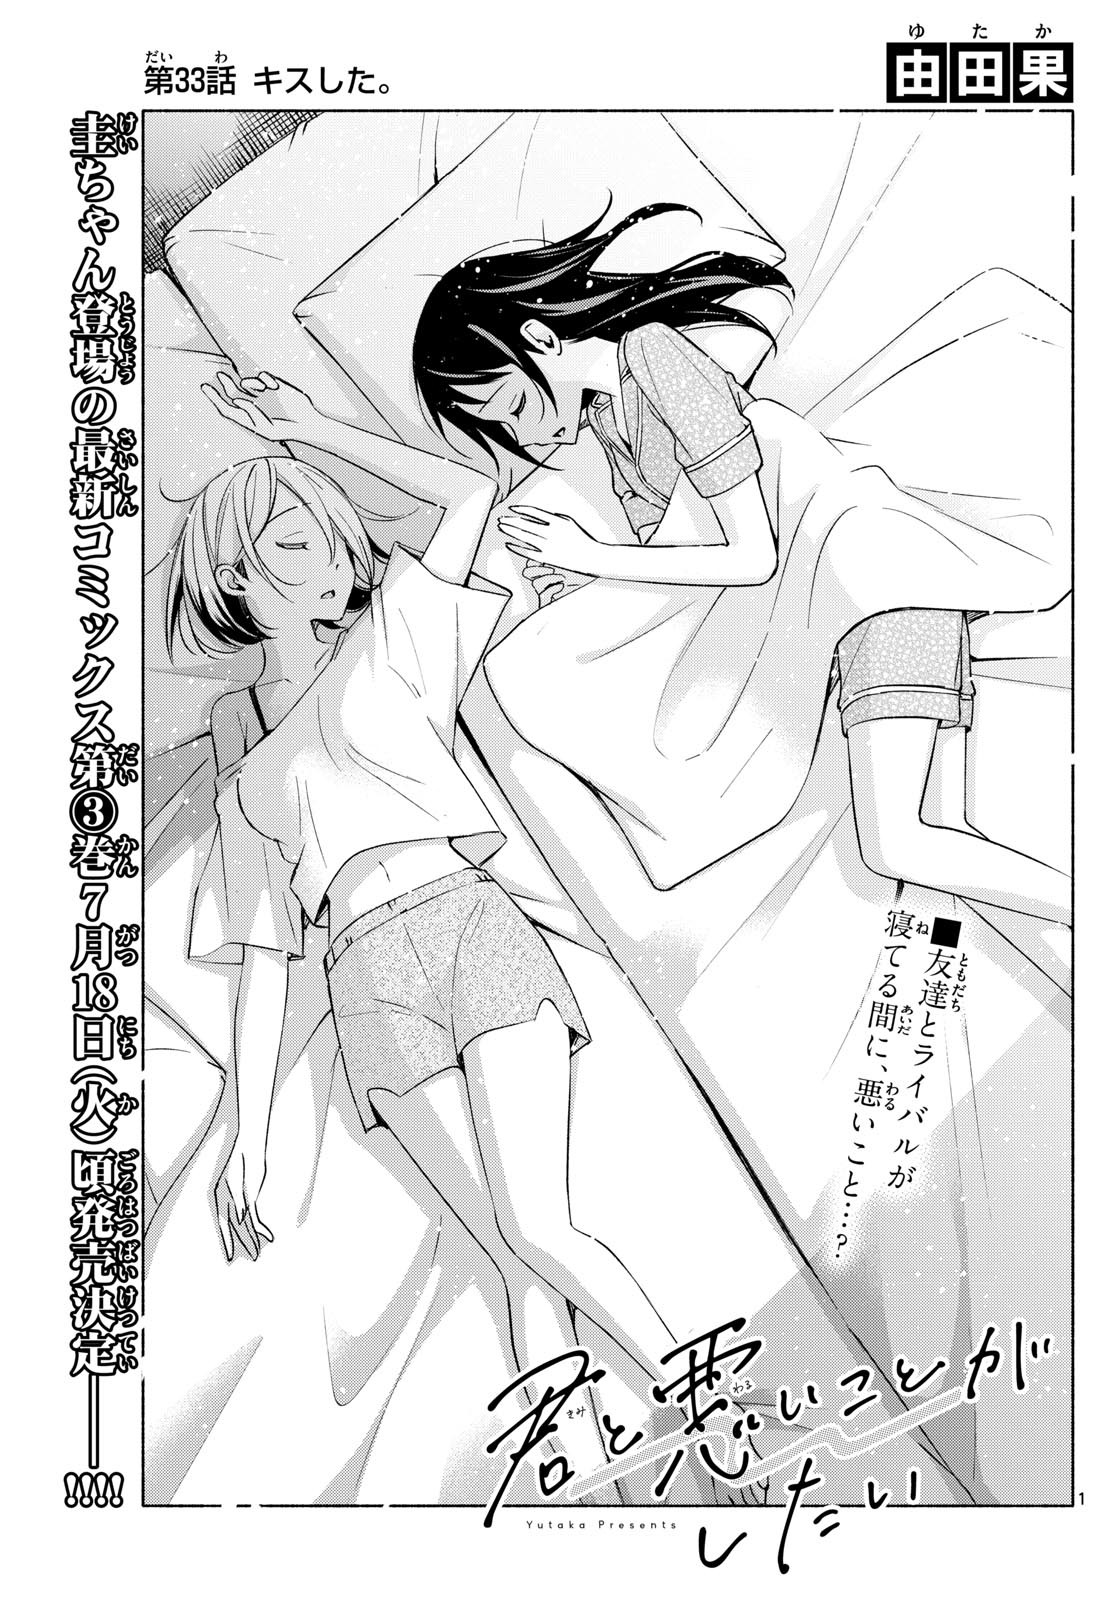 Kimi to Warui Koto ga Shitai - Chapter 033 - Page 1